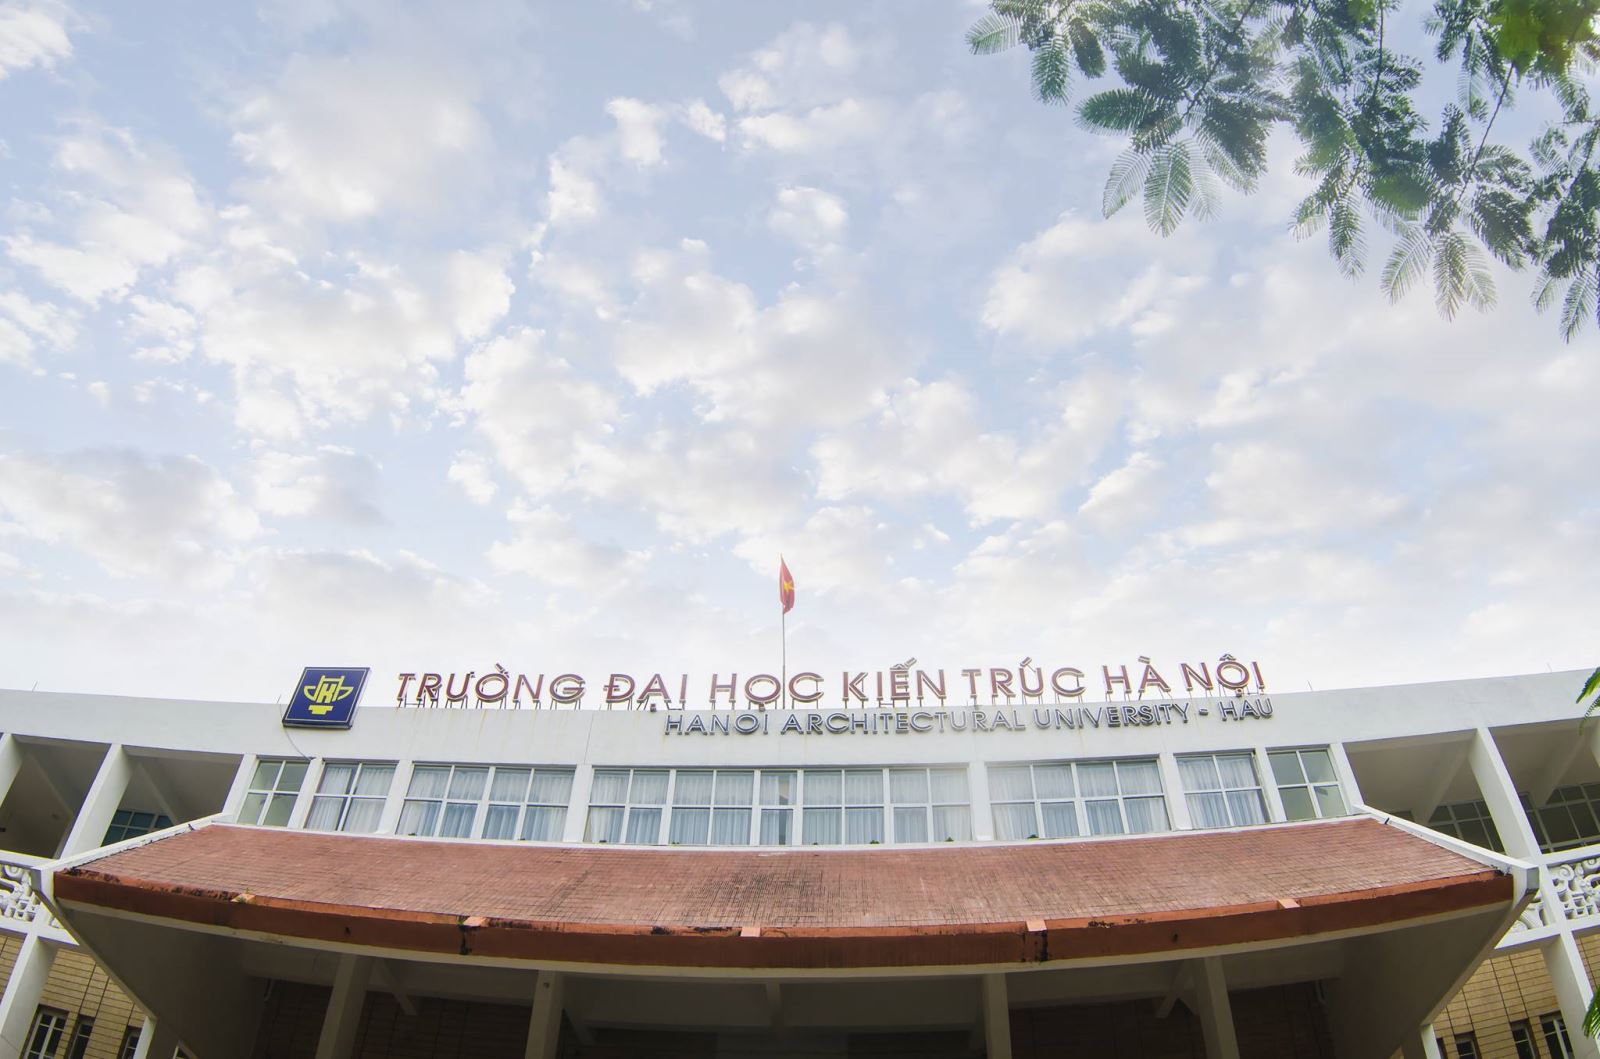 Chứng nhận Trường Đại học Kiến trúc Hà Nội đạt tiêu chuẩn Chất lượng giáo dục do Bộ trưởng Bộ Giáo dục và đào tạo ban hành